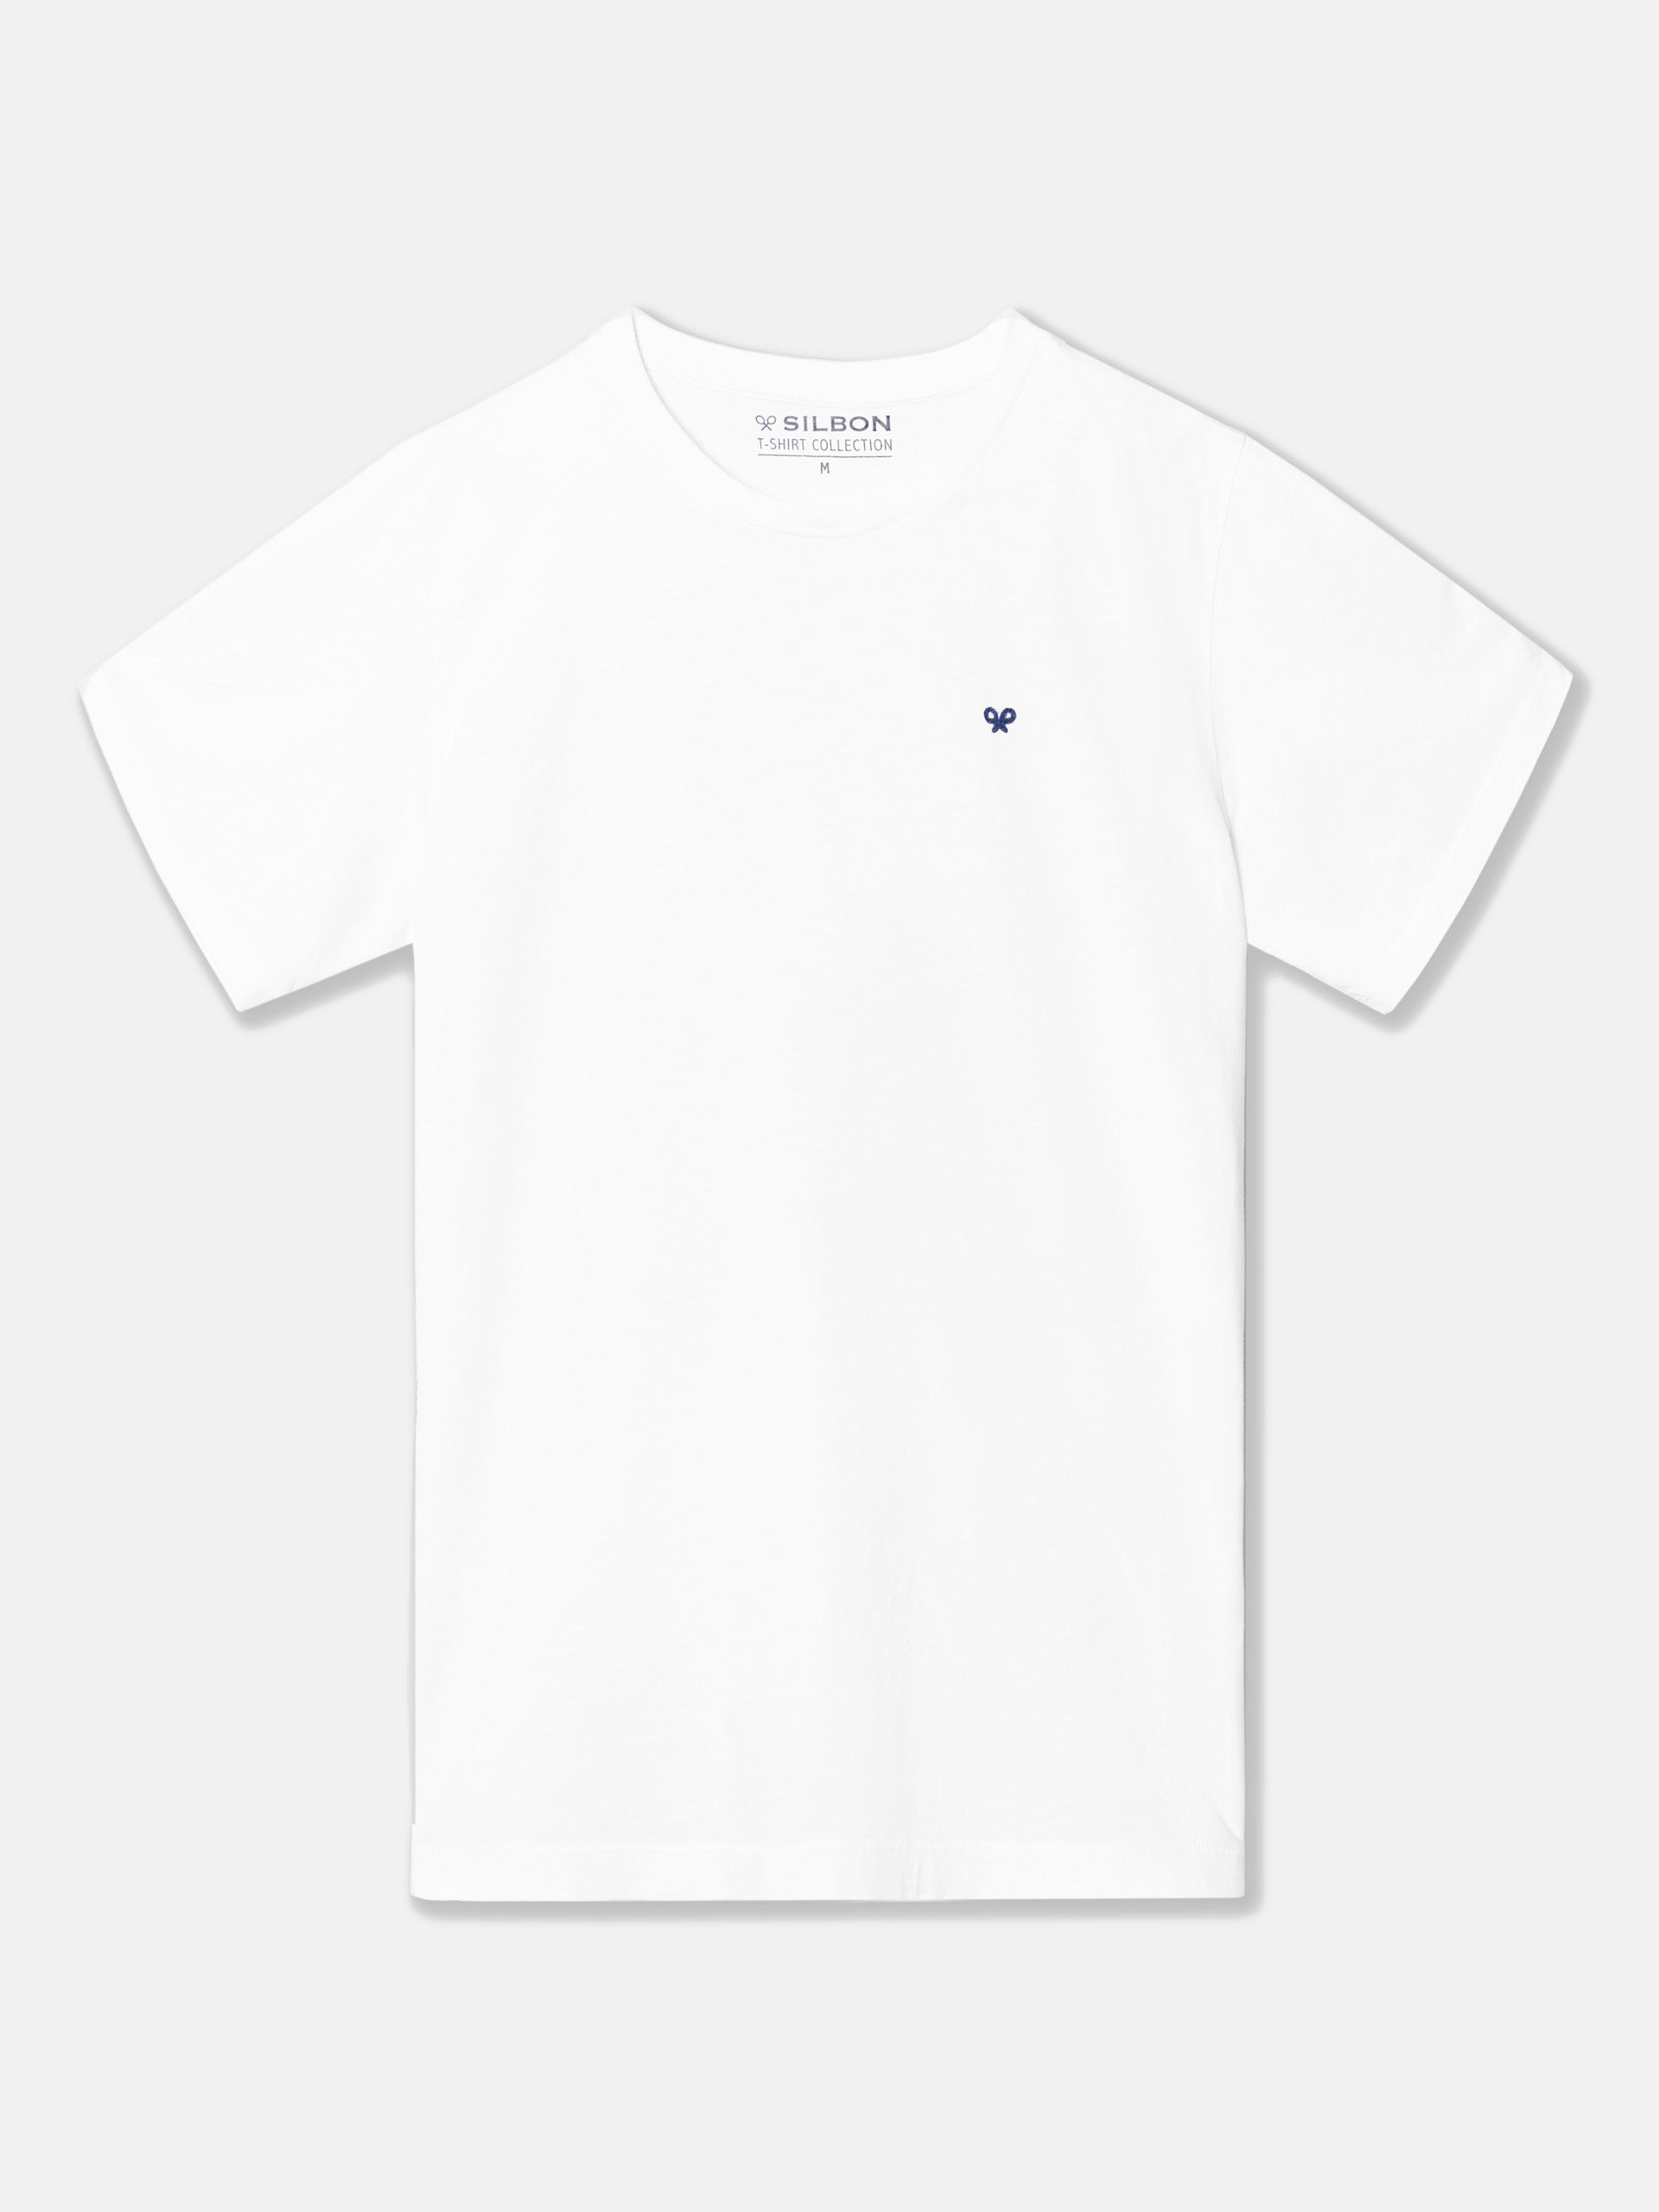 Silbon vibes white t-shirt